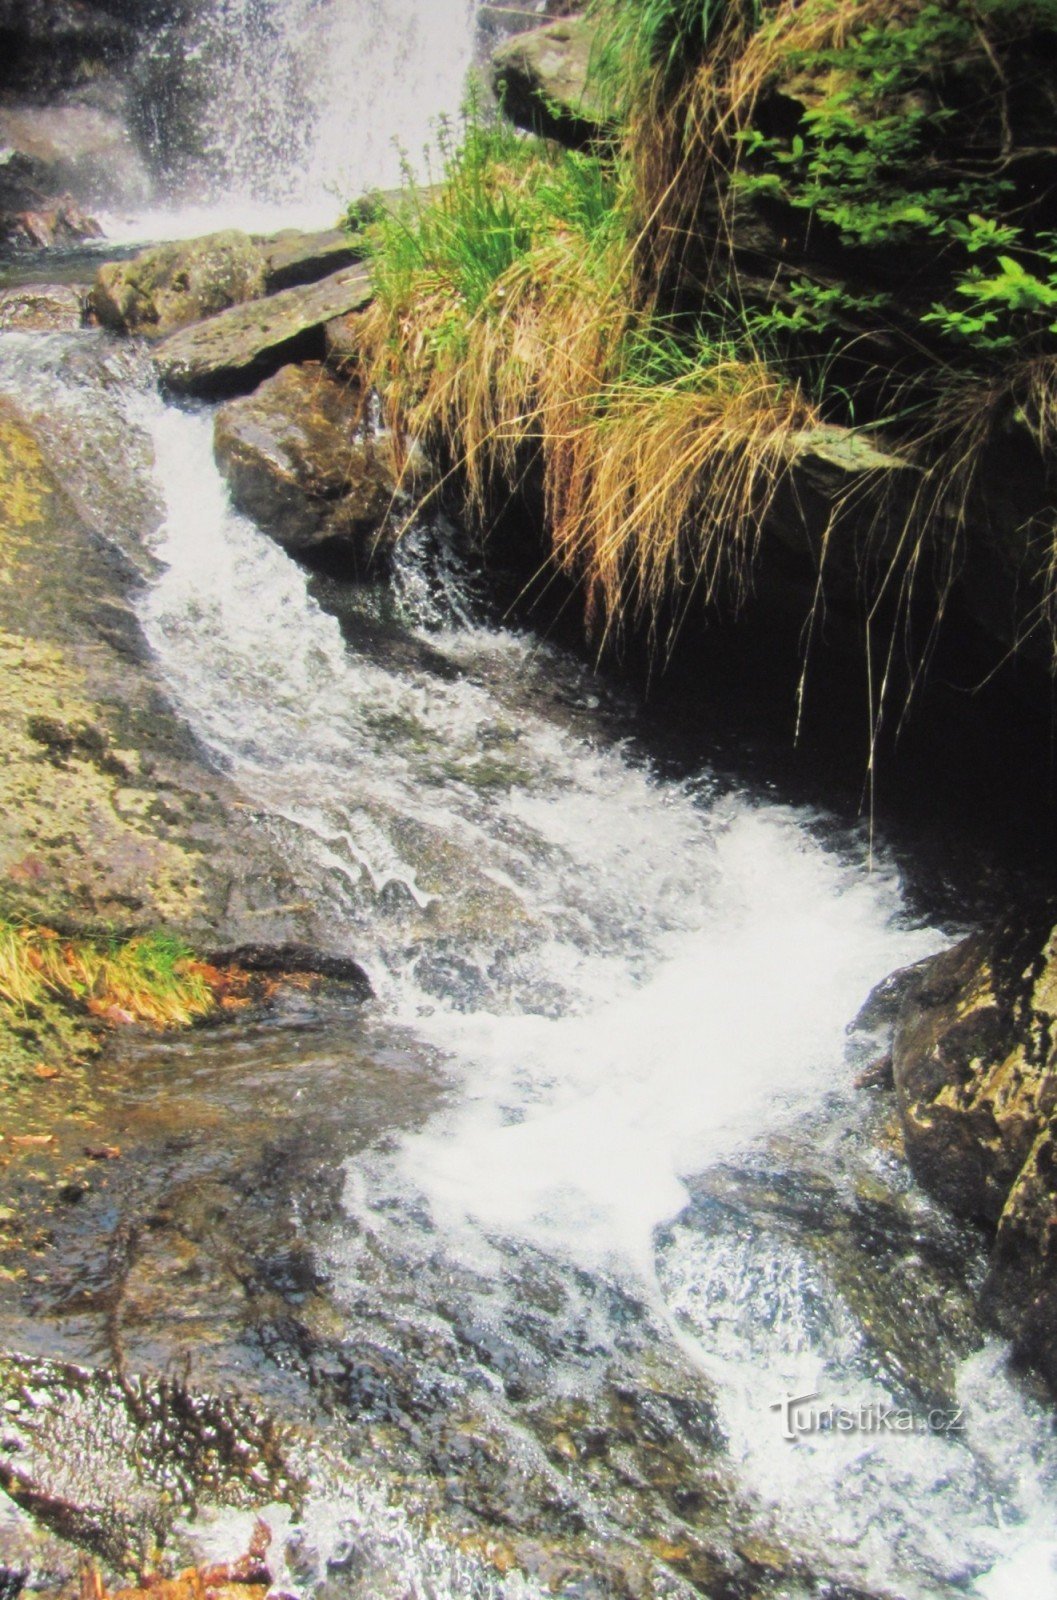 A las cascadas del Borový potok